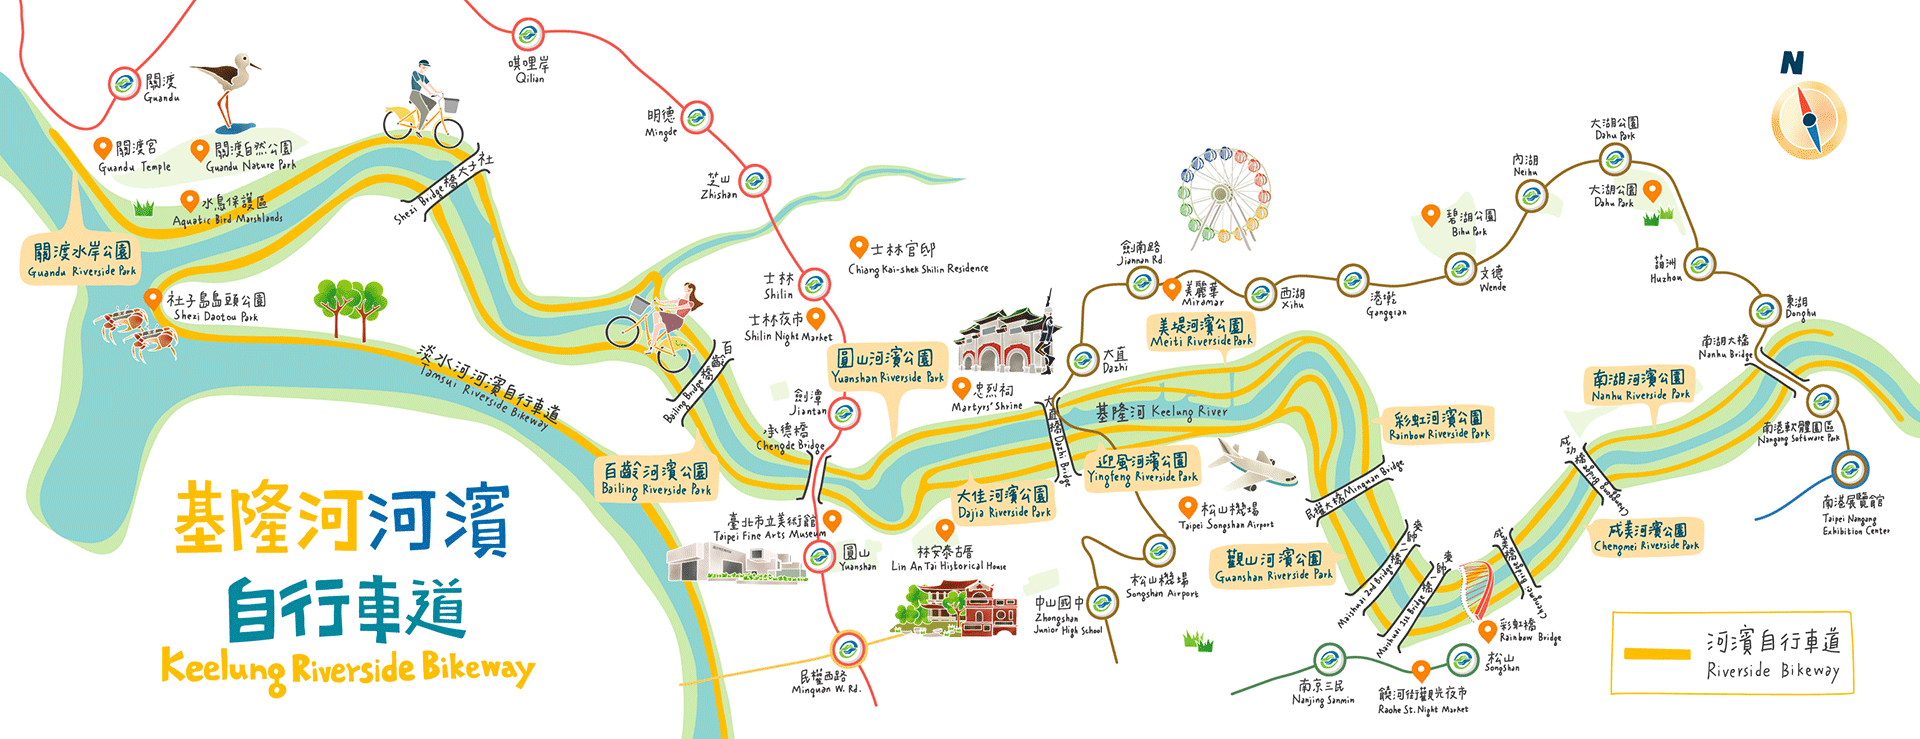 基隆河濱自行車道地圖